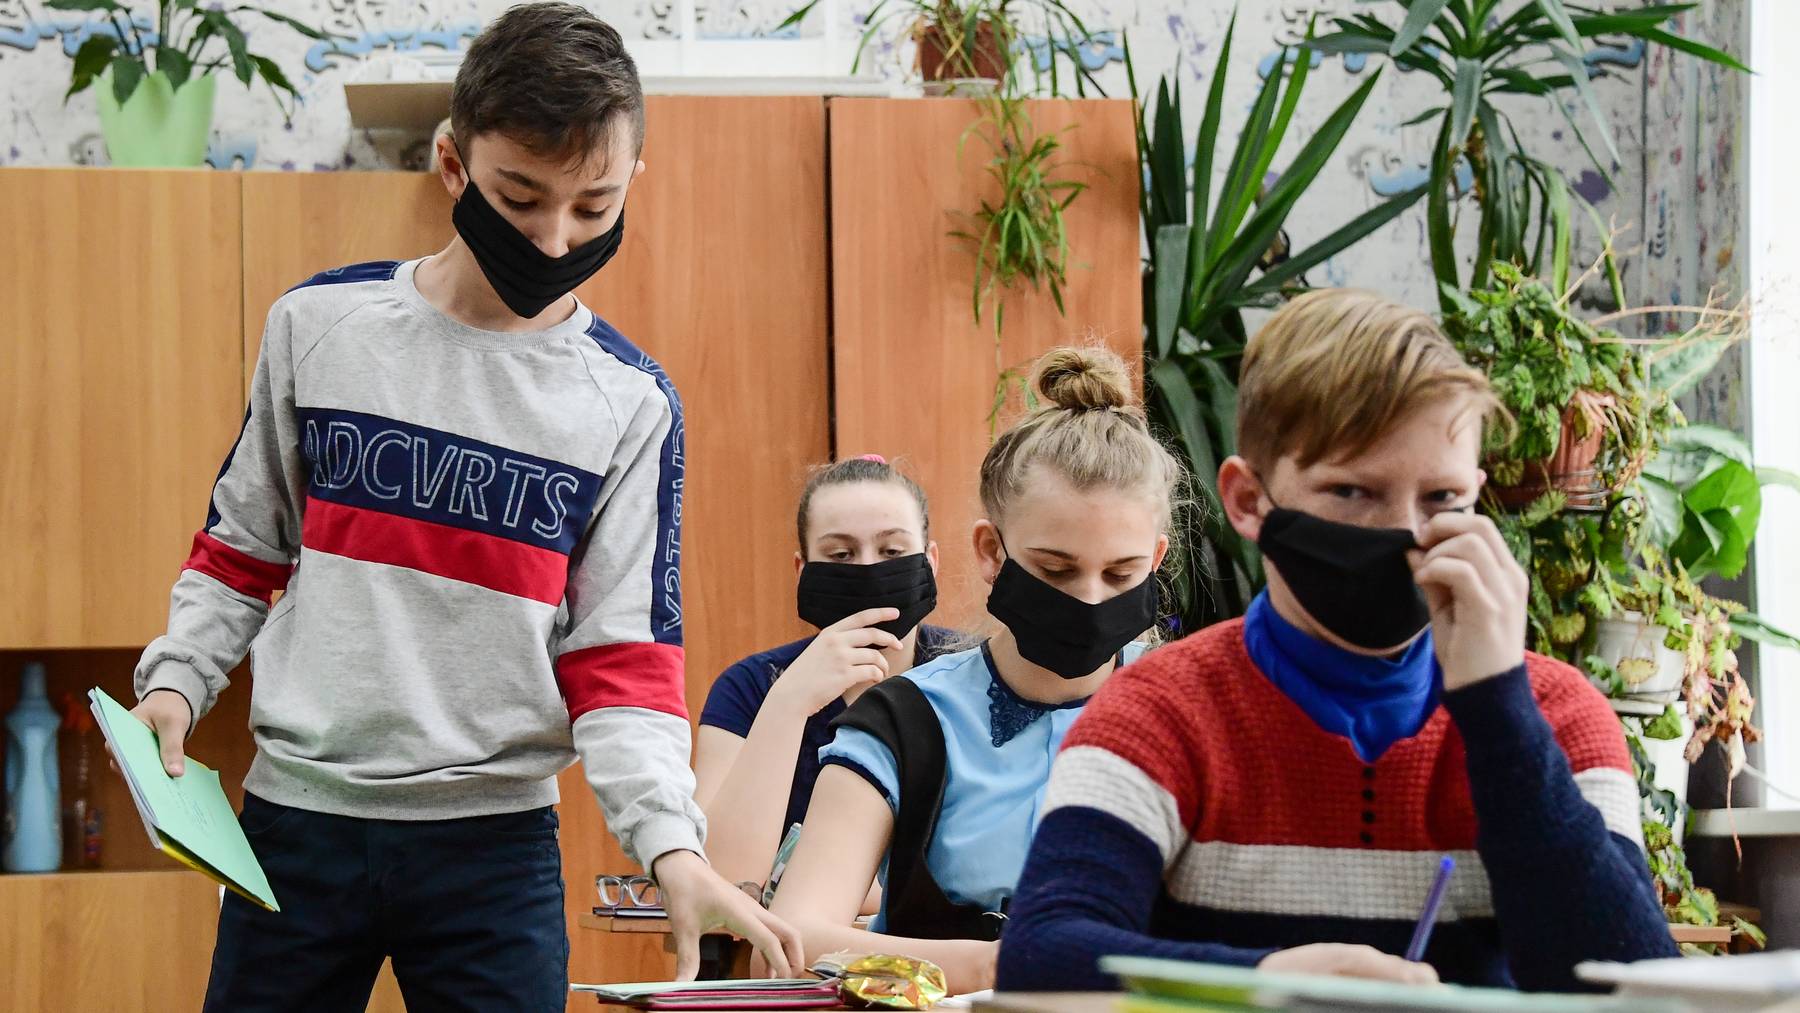 In Zürich müssen Primarschülerinnen und -schüler ab der 4. Klasse künftig Masken tragen. (Symbolbild)